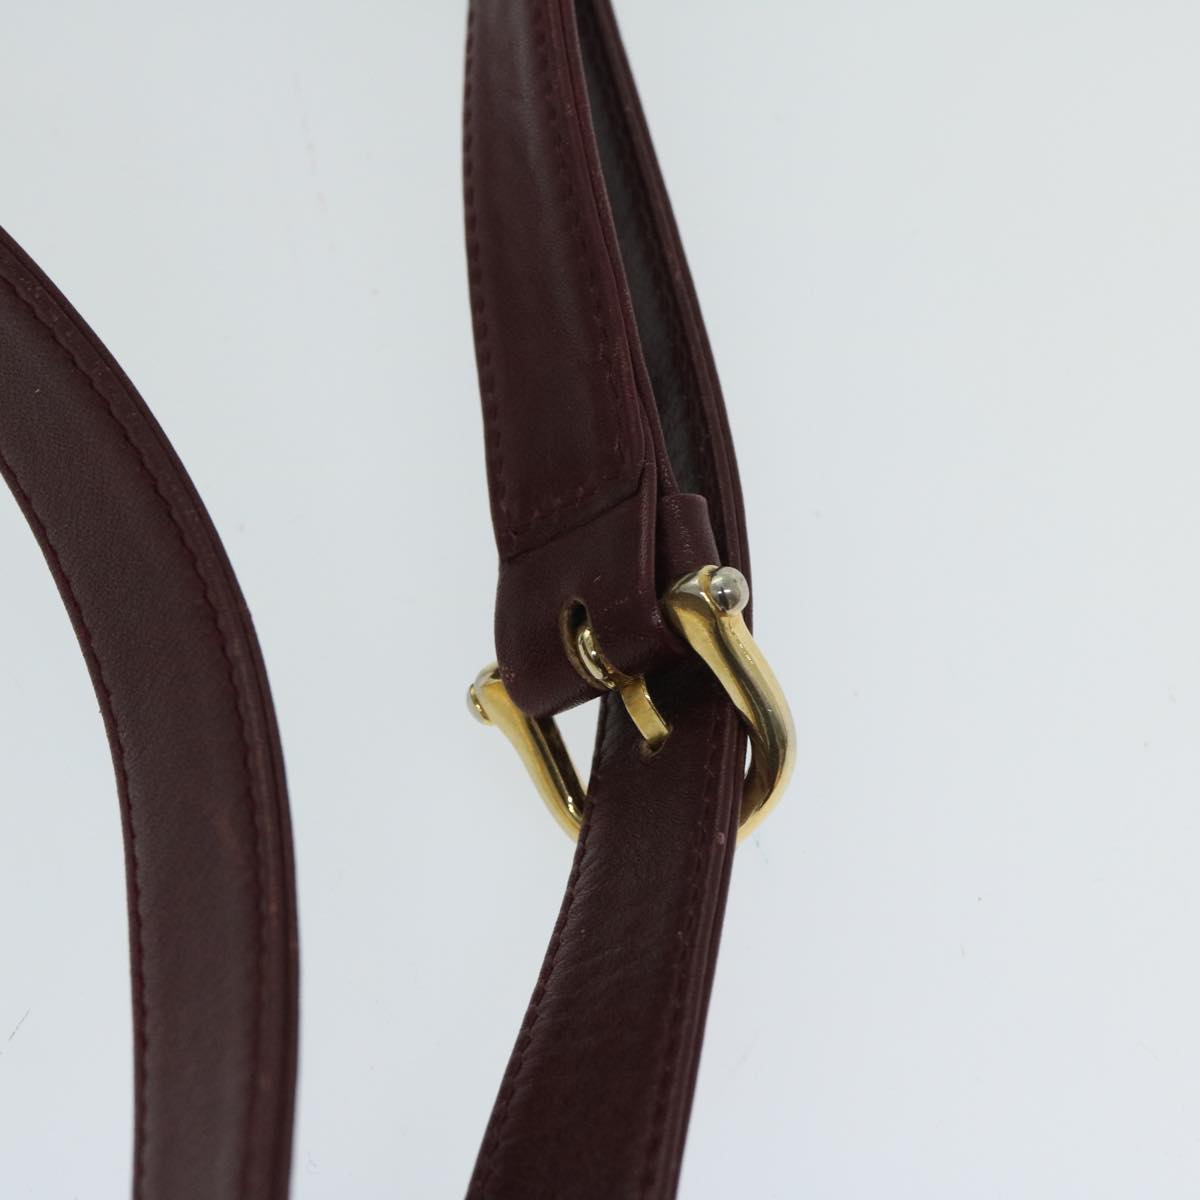 CELINE Shoulder Bag Leather Bordeaux Auth th4687